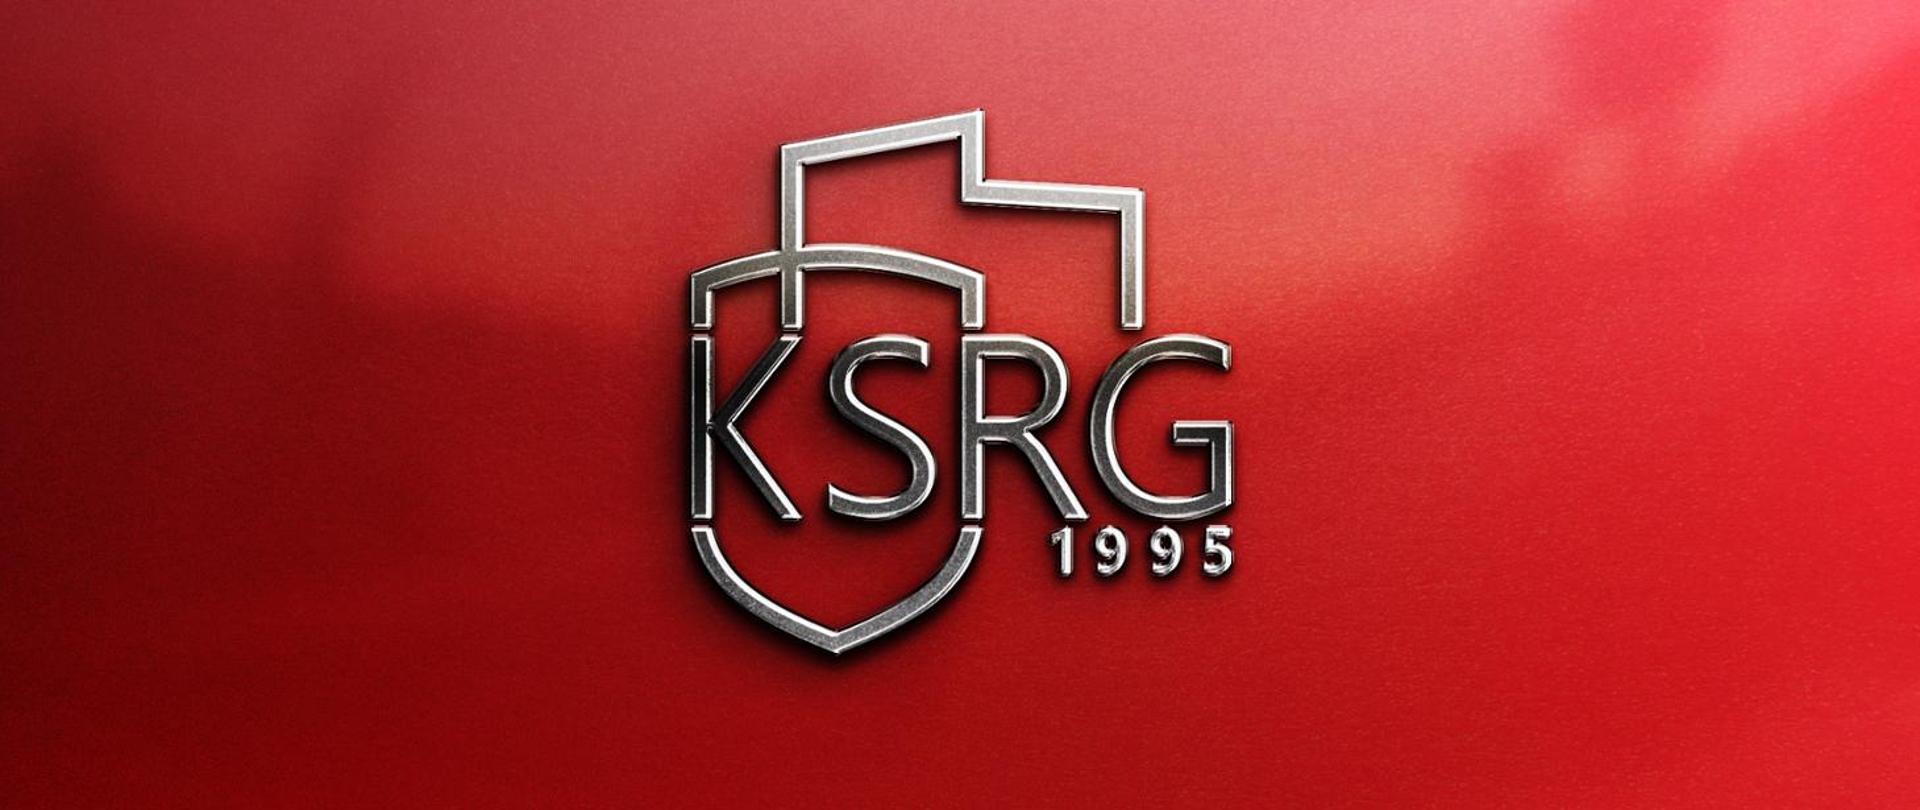 logo z napisem KSRG i cyframi 1995 na czerwony tle